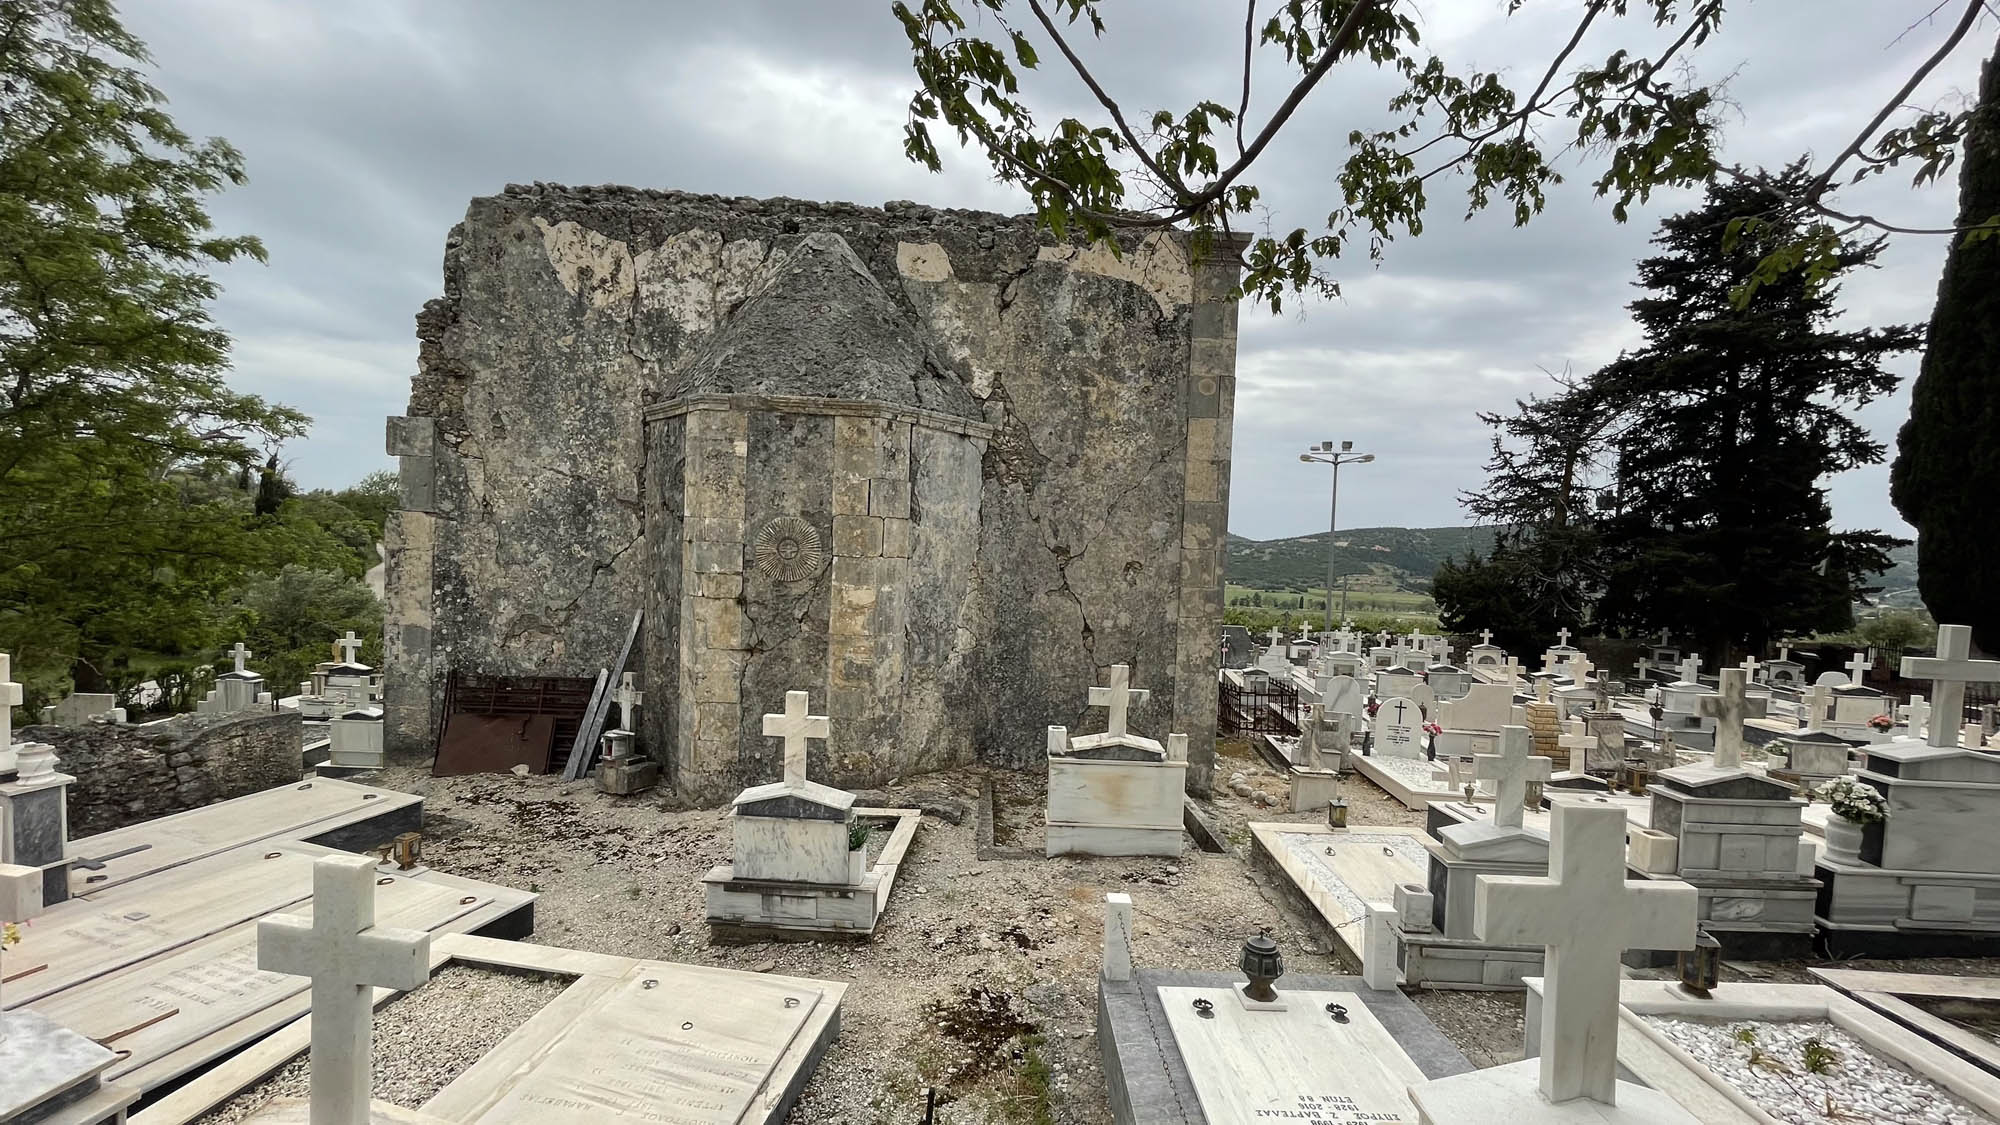 cmentarz i cerkiew w opuszczonej wiosce na kefalonii